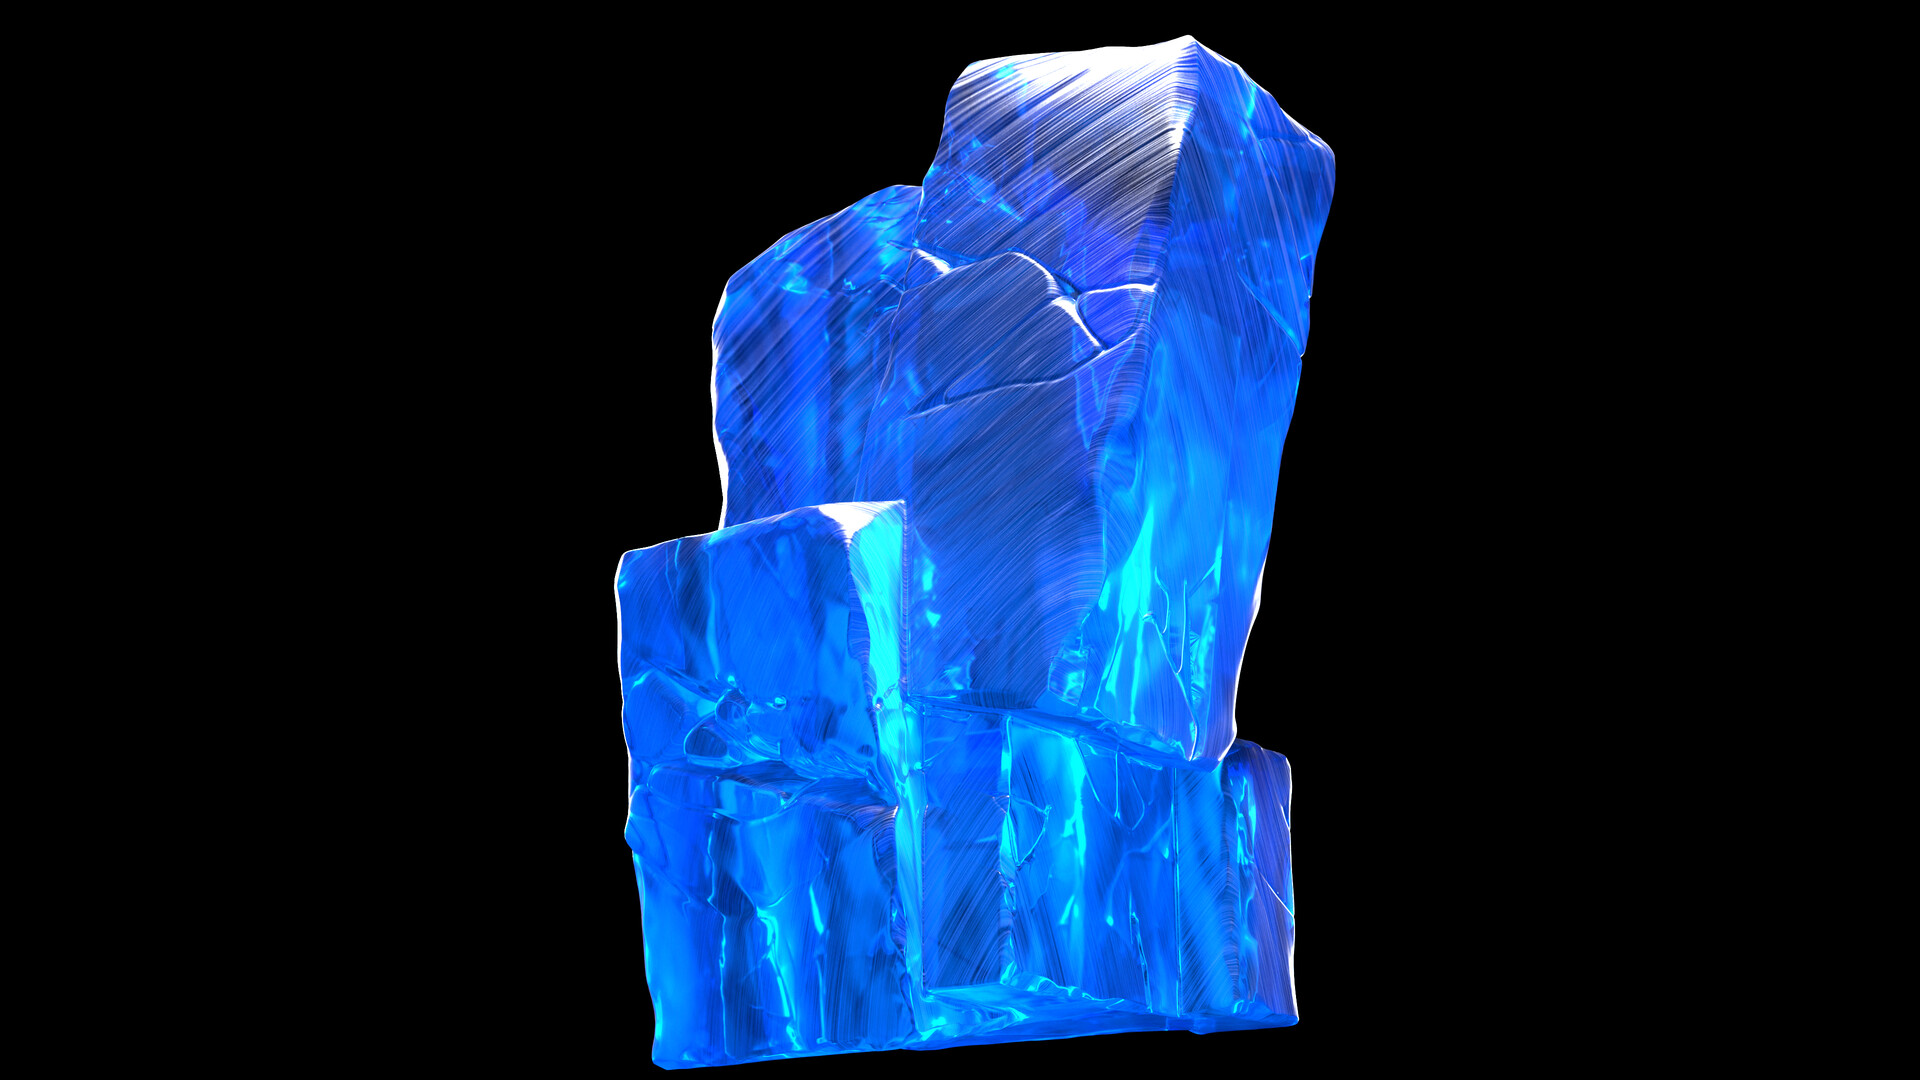 ArtStation - crystal